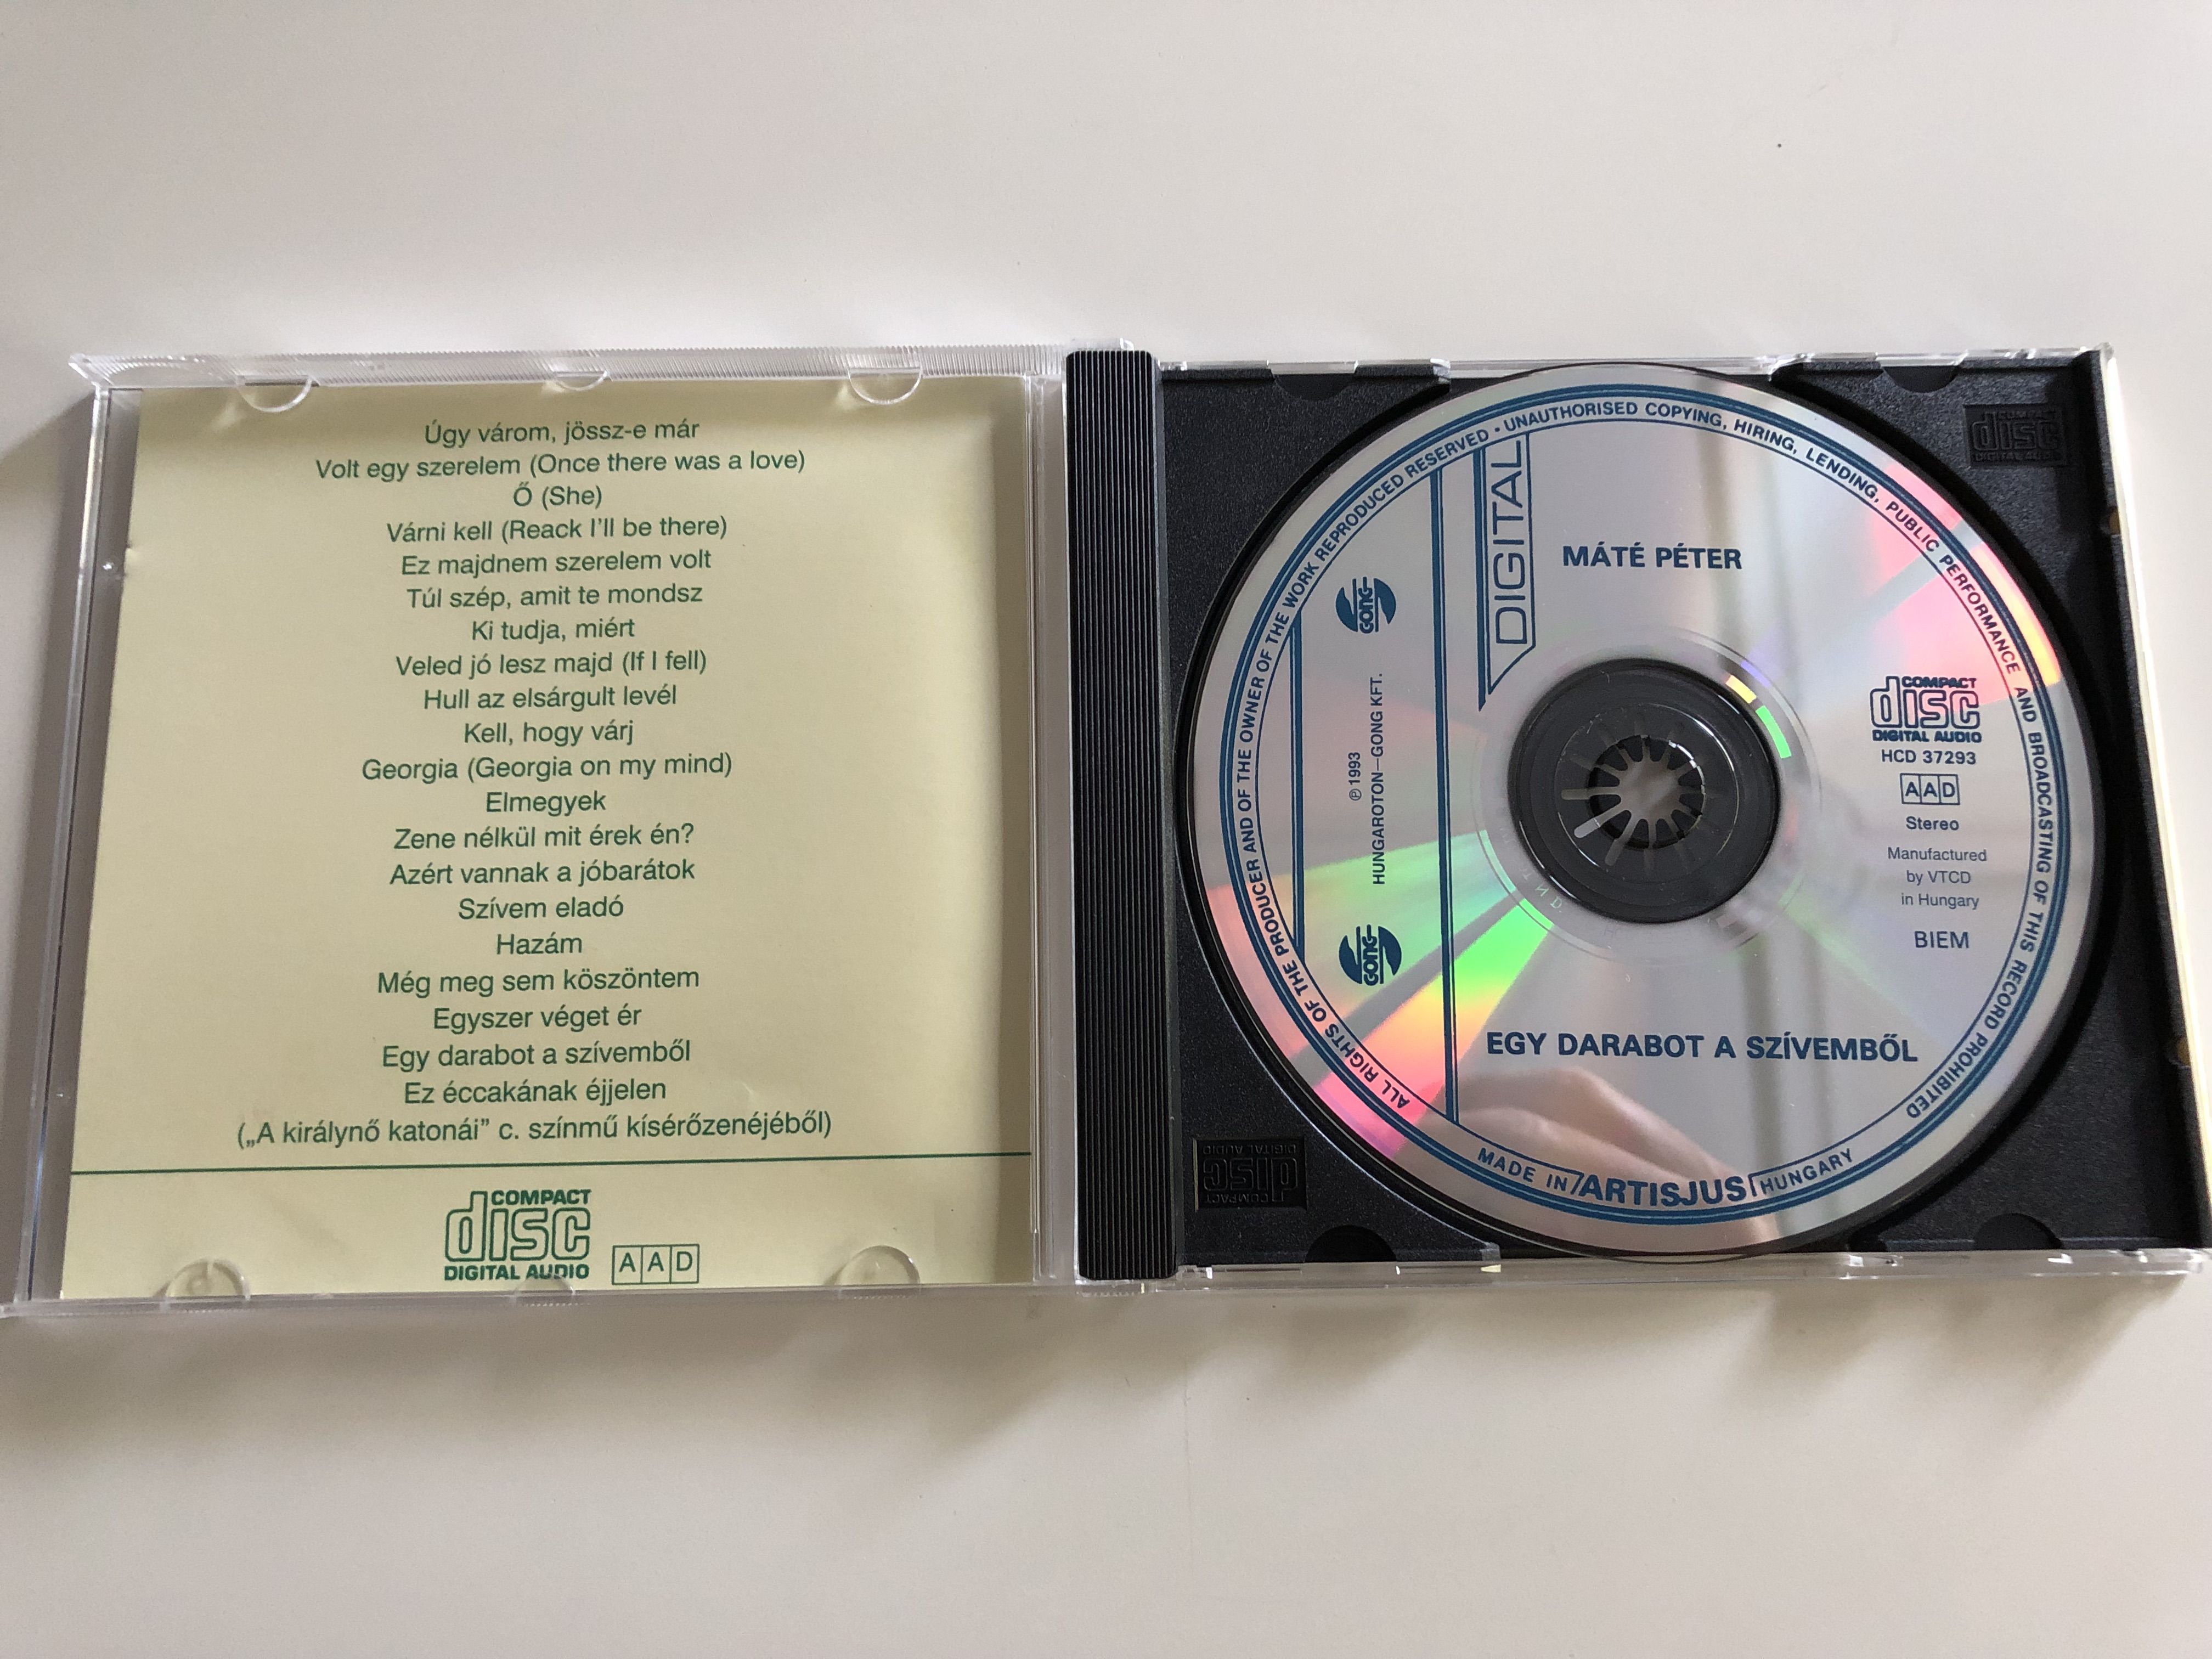 -m-t-p-ter-egy-darabot-a-sz-vemb-l-hcd-37293-hungaroton-gong-audio-cd-1994-4-.jpg